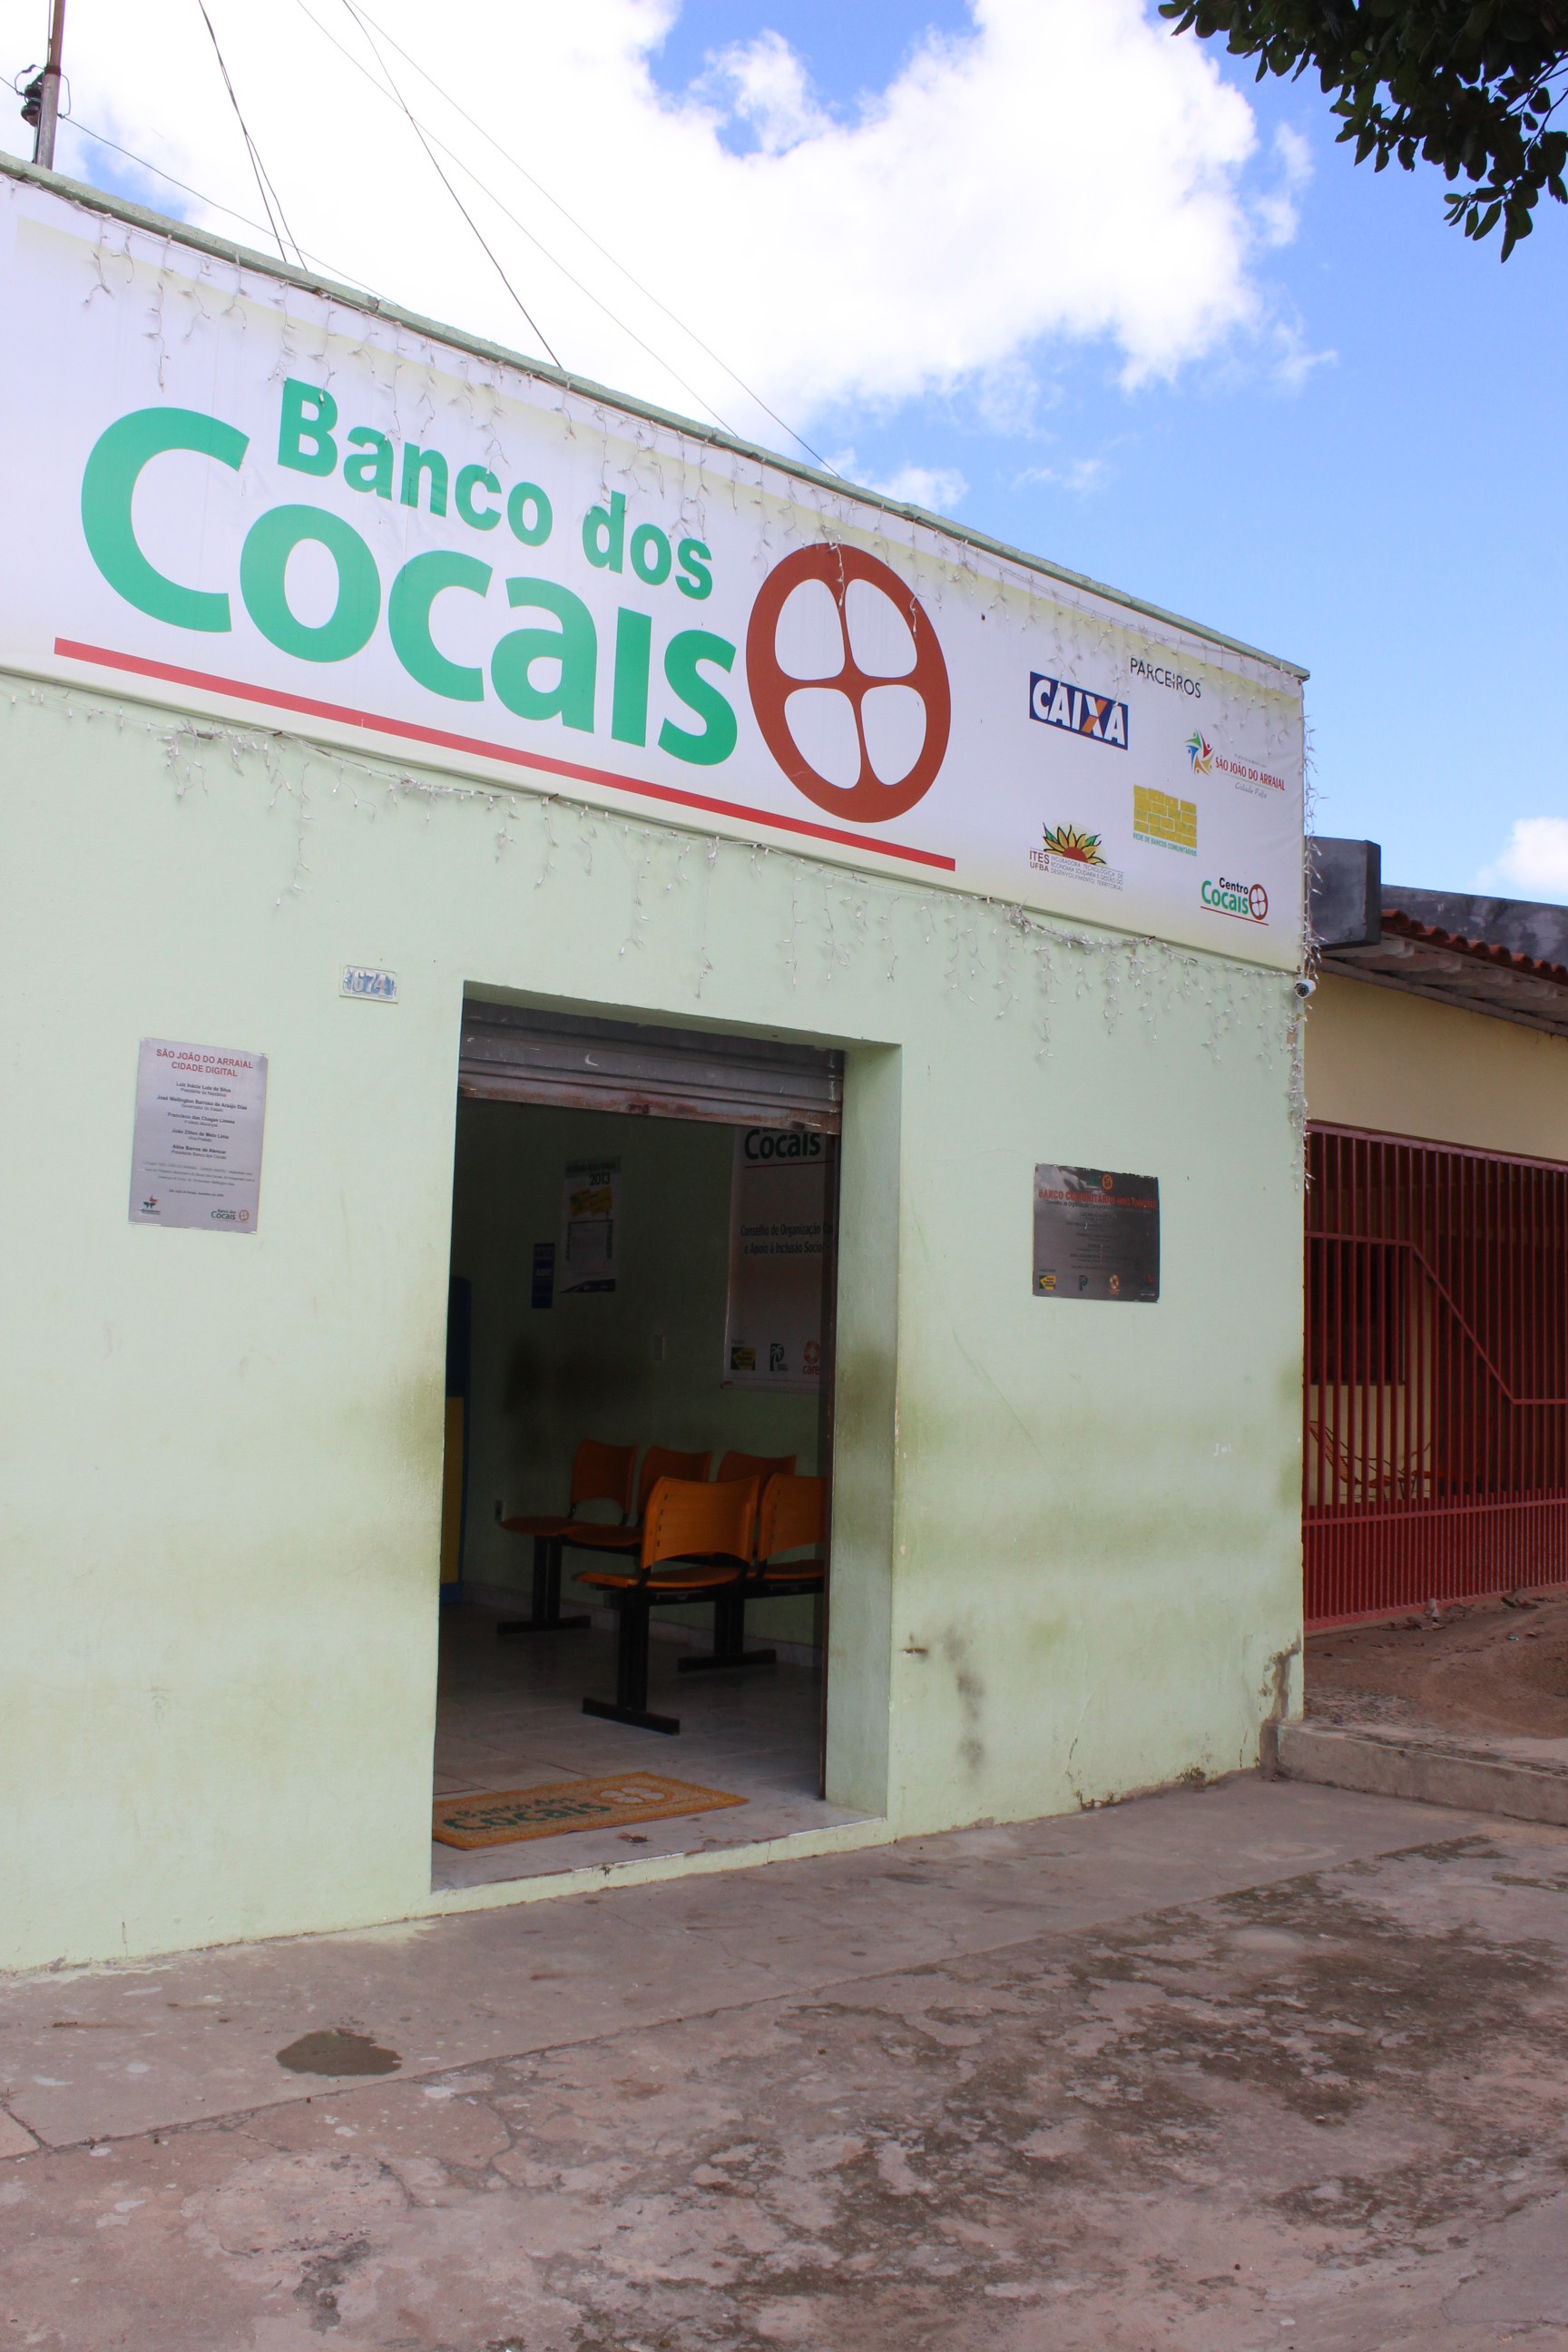 Criação do Banco dos Cocais foi fundamental para circulação do dinheiro (Foto: Catarina Costa/G1)